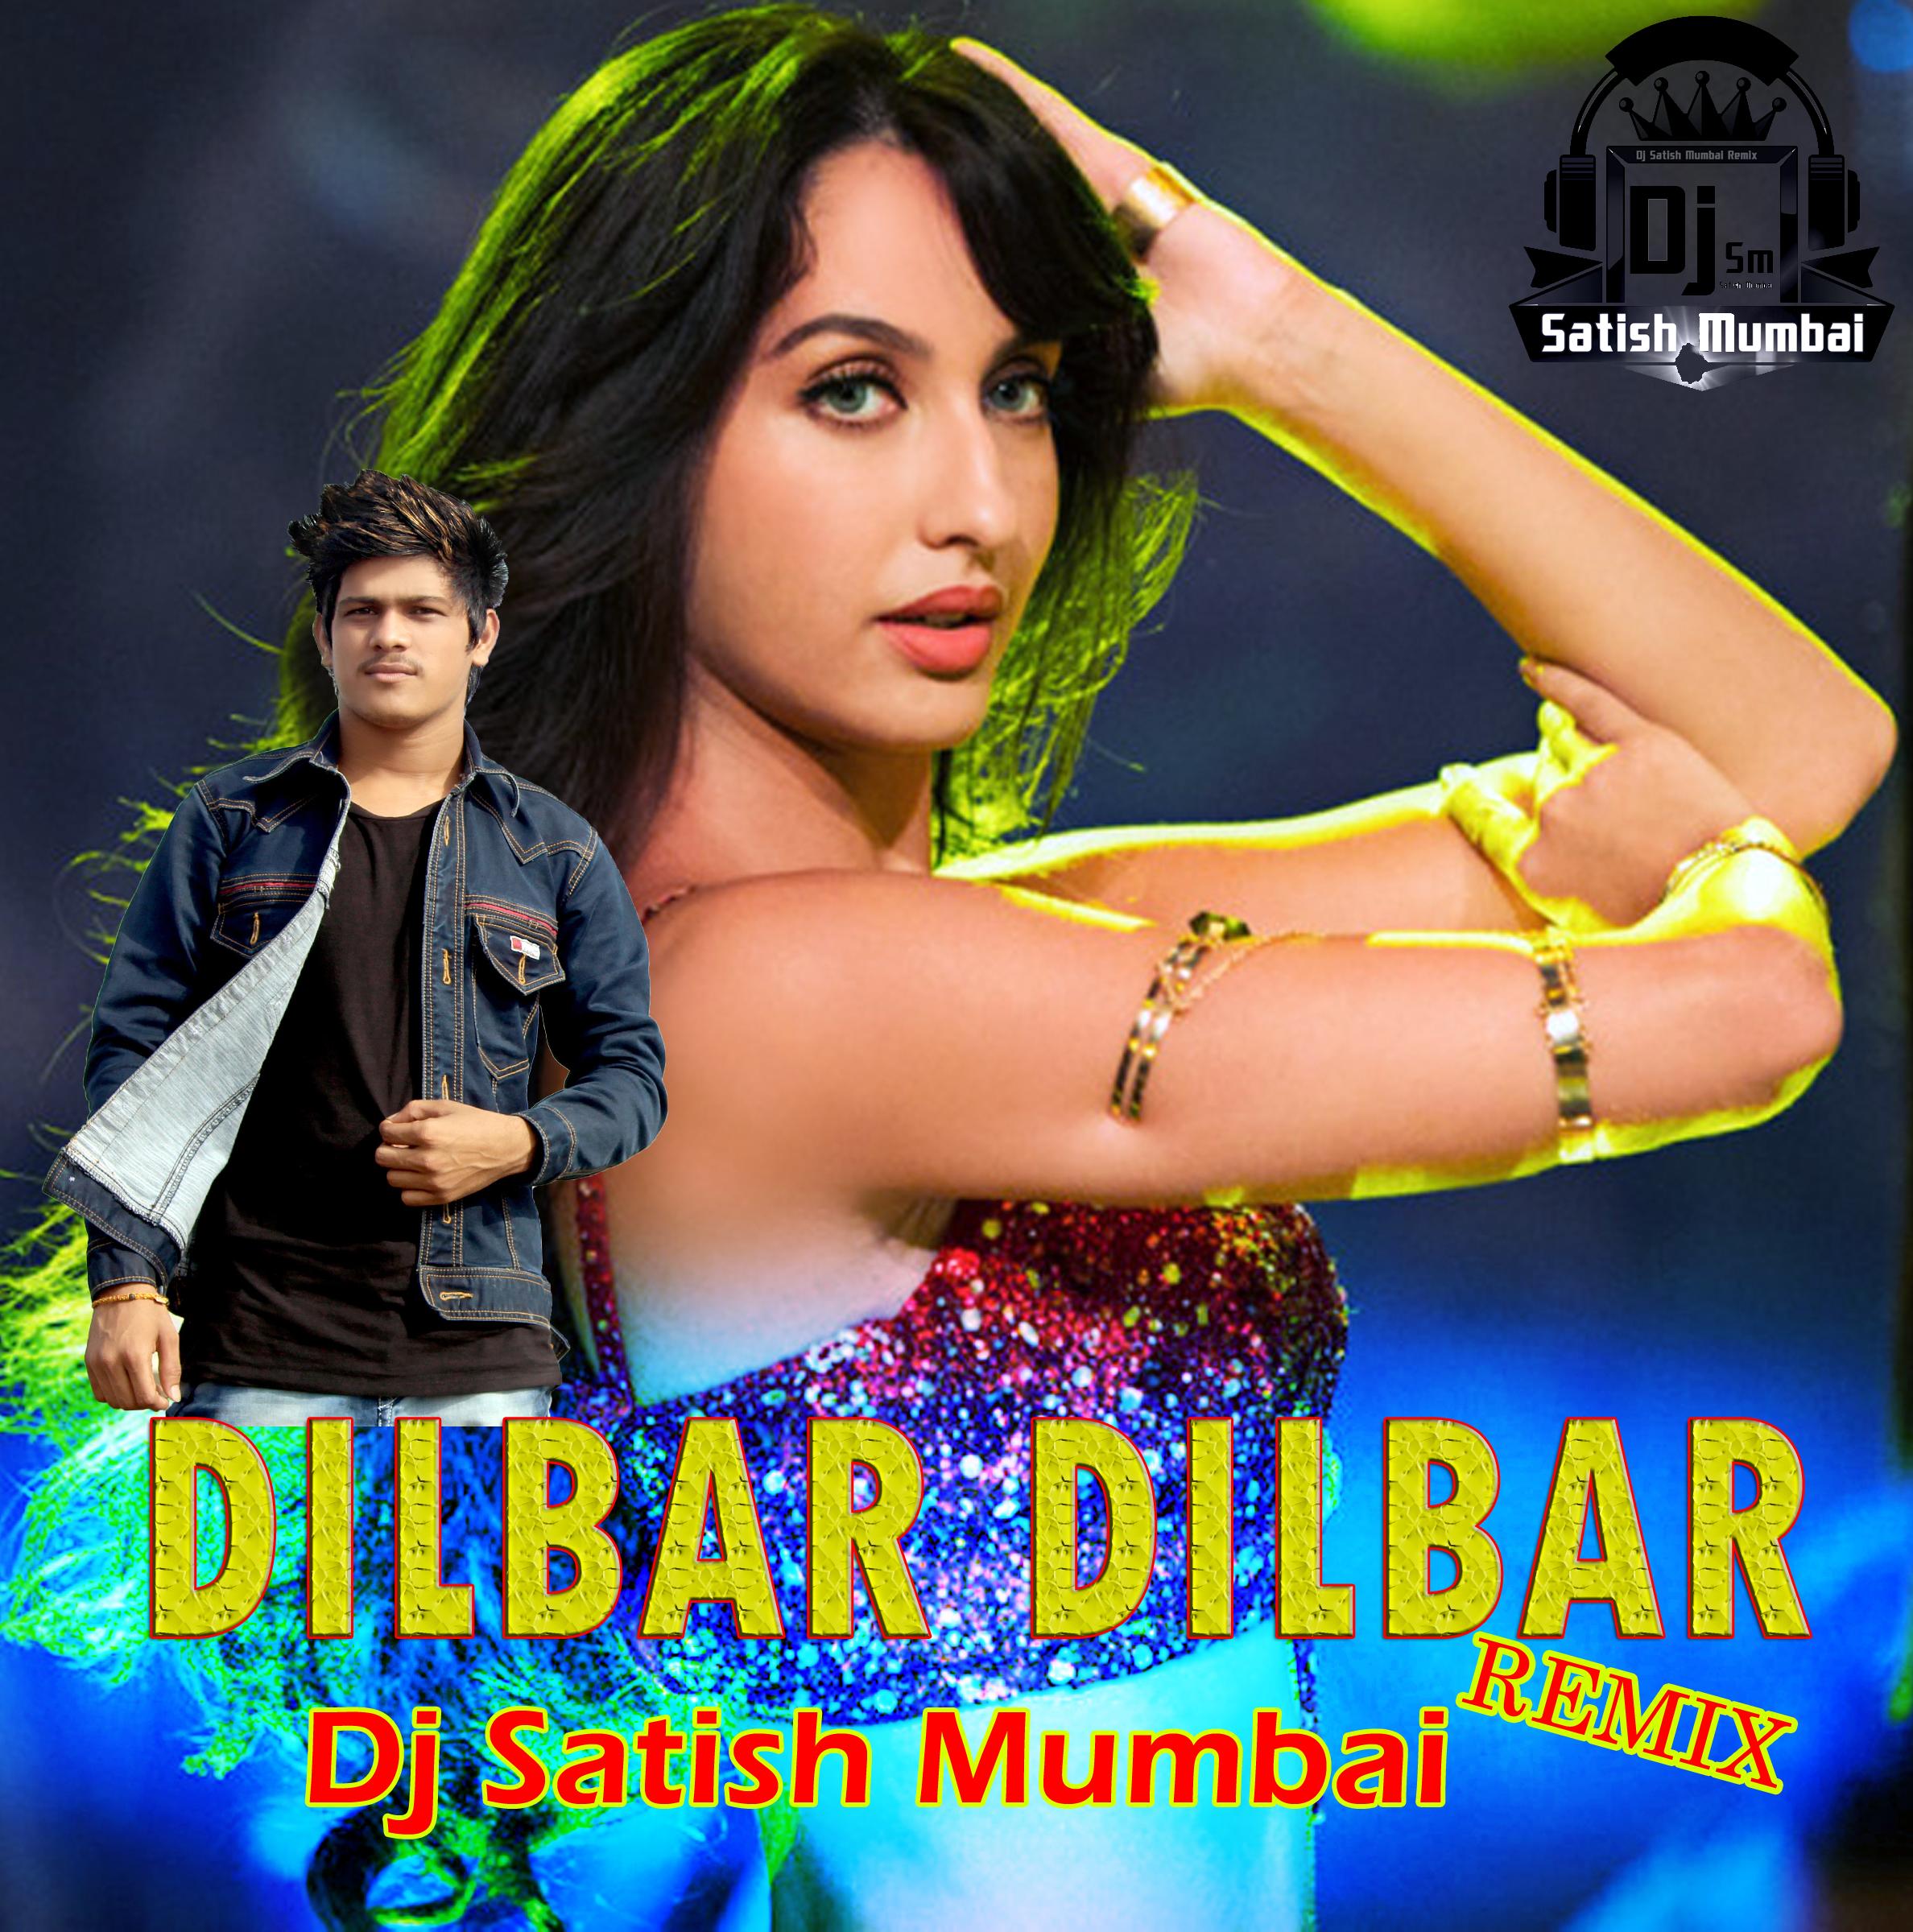 Dilbar Dilbar Neha Kakkar Dj Satish Mumbai Remix